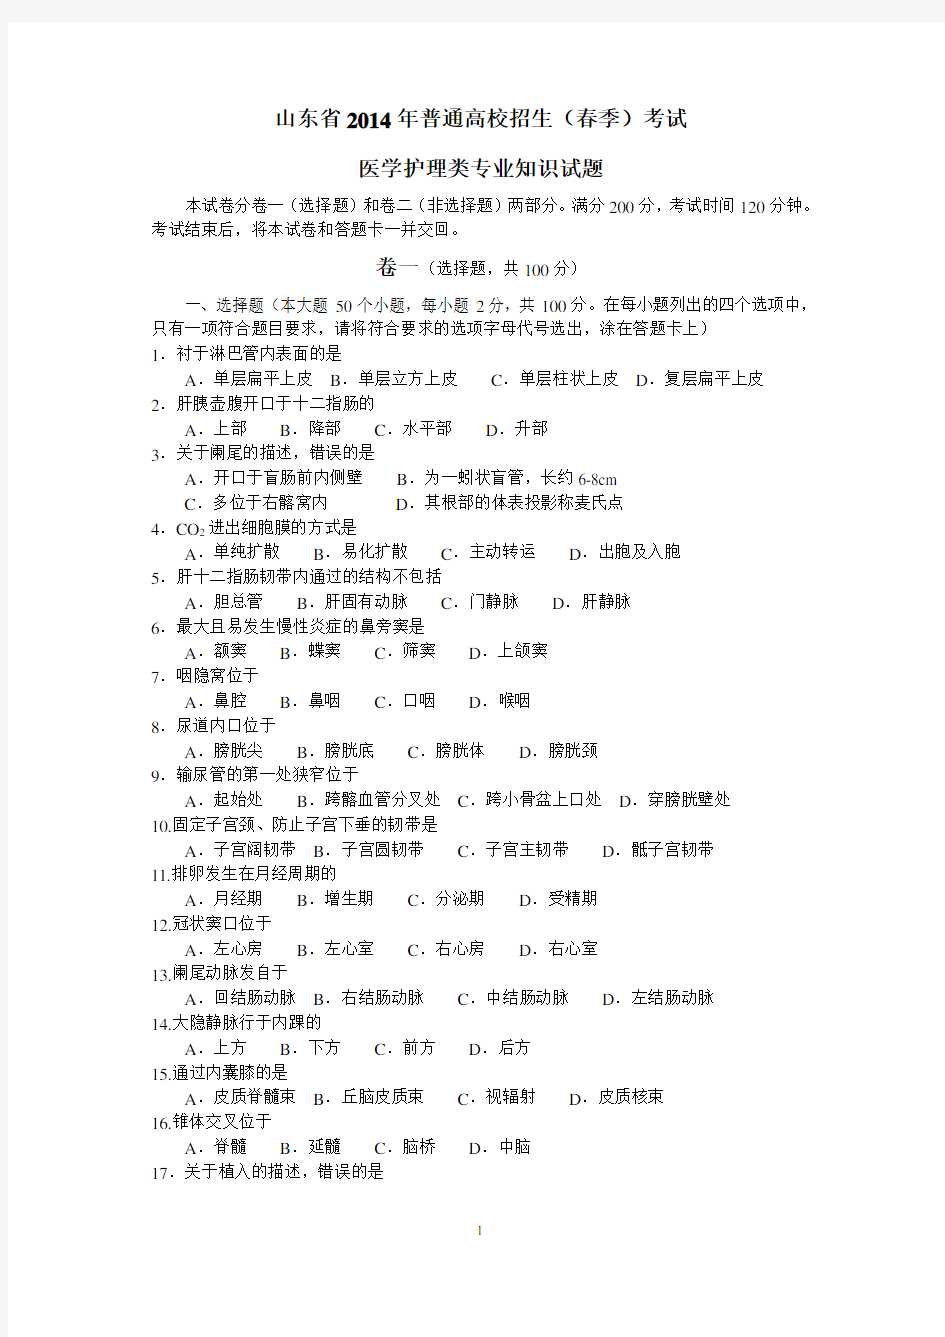 (完整版)2014年山东省春季高考医学护理试卷